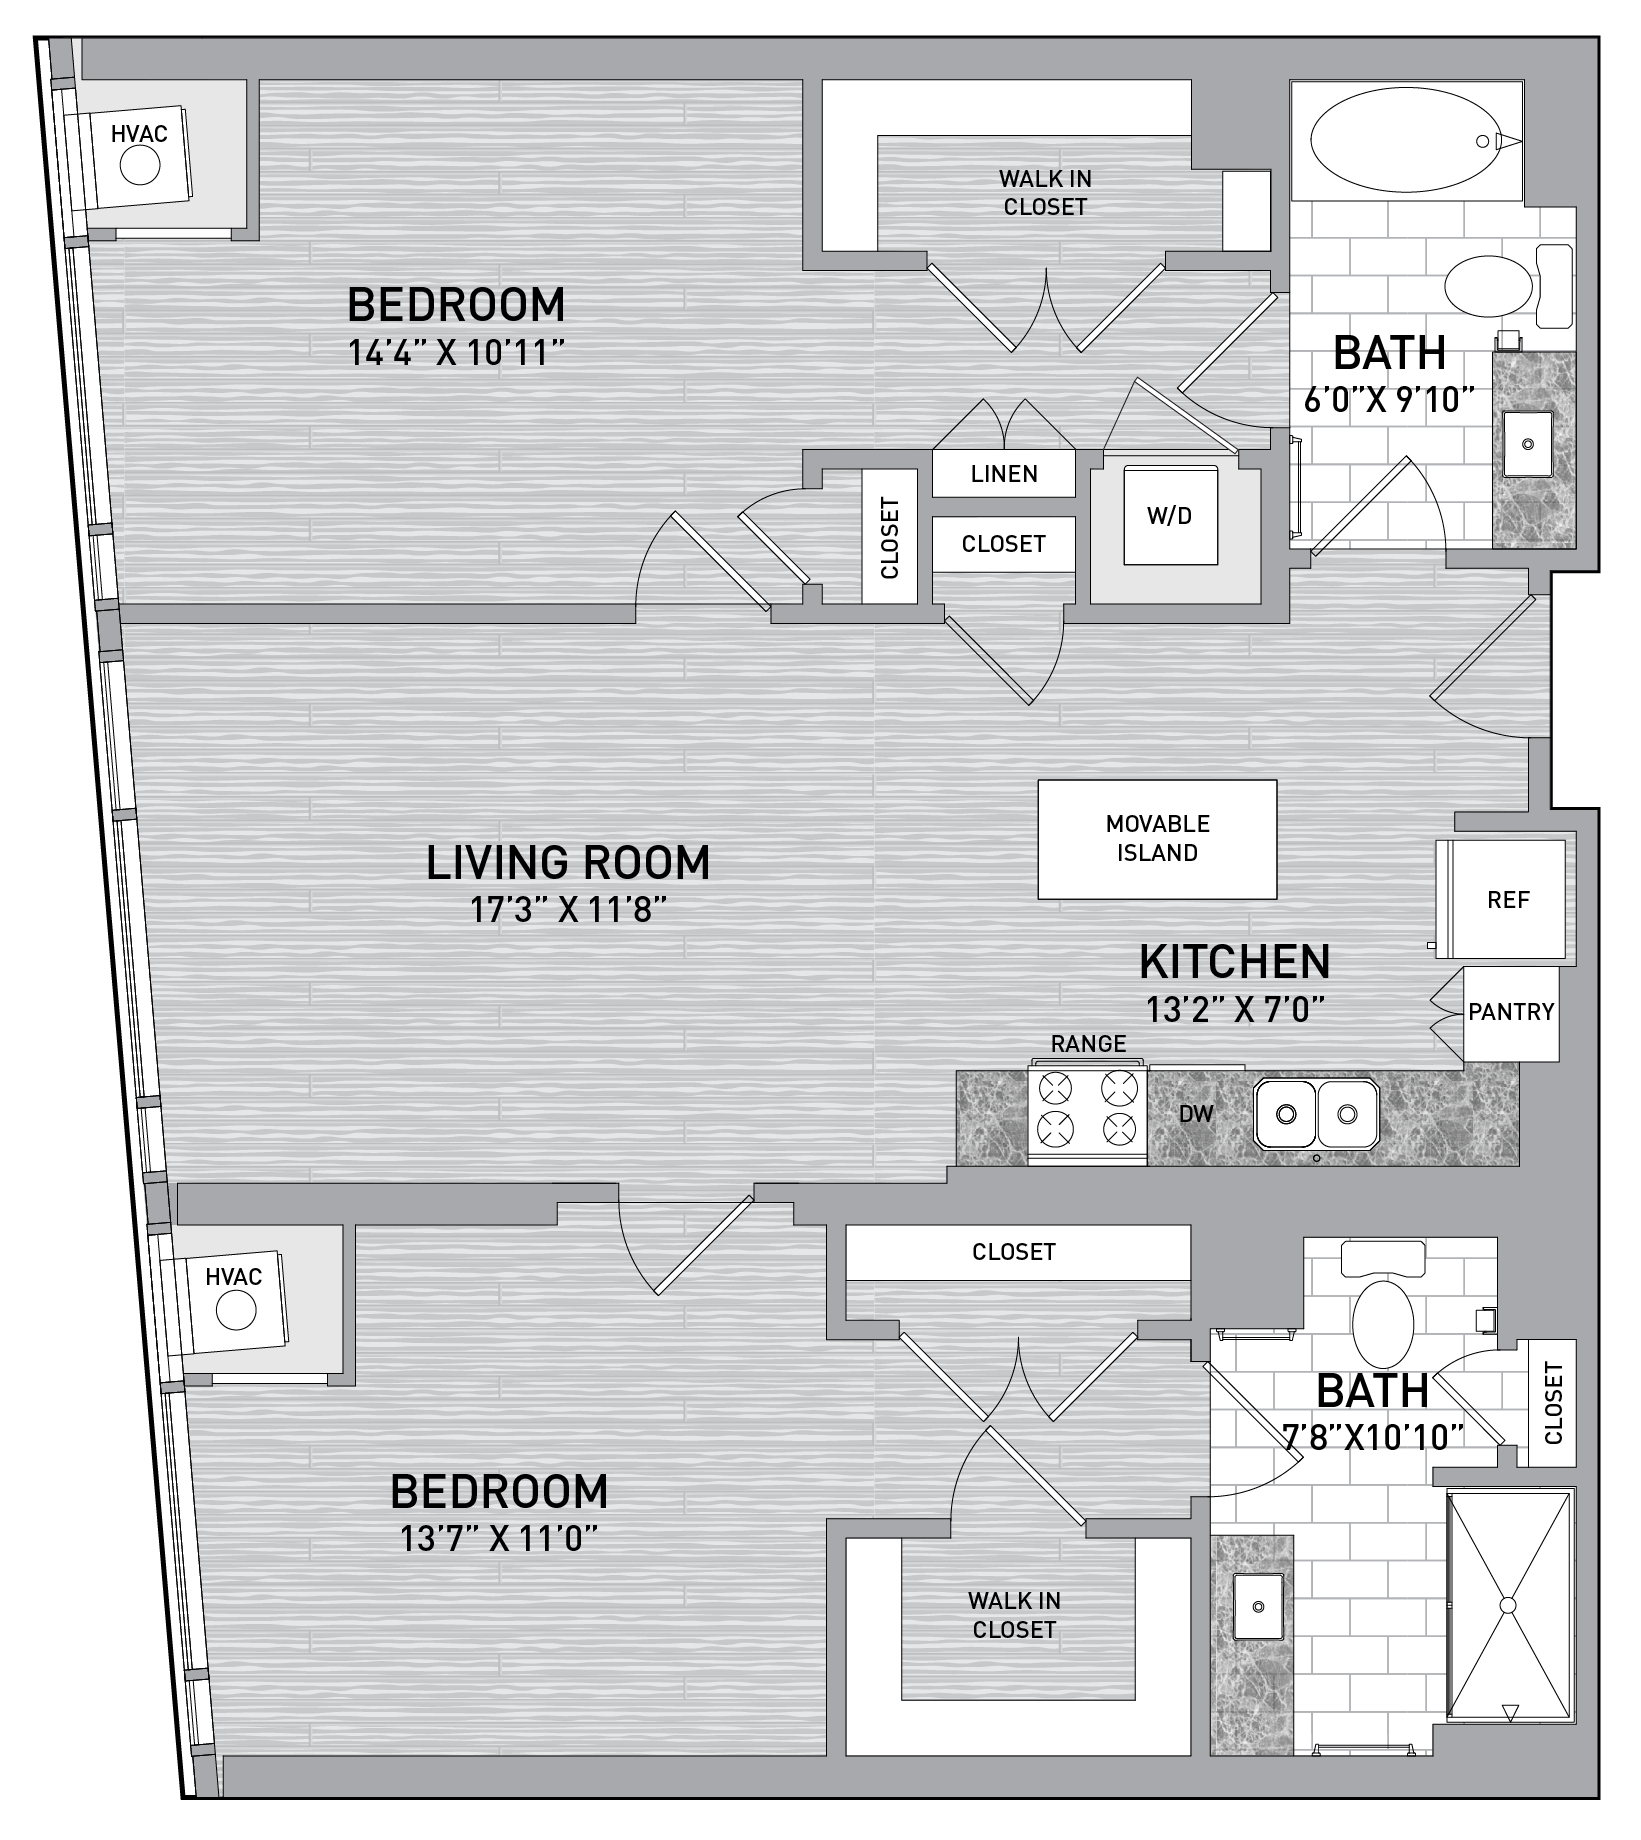 floorplan image of unit id 0522